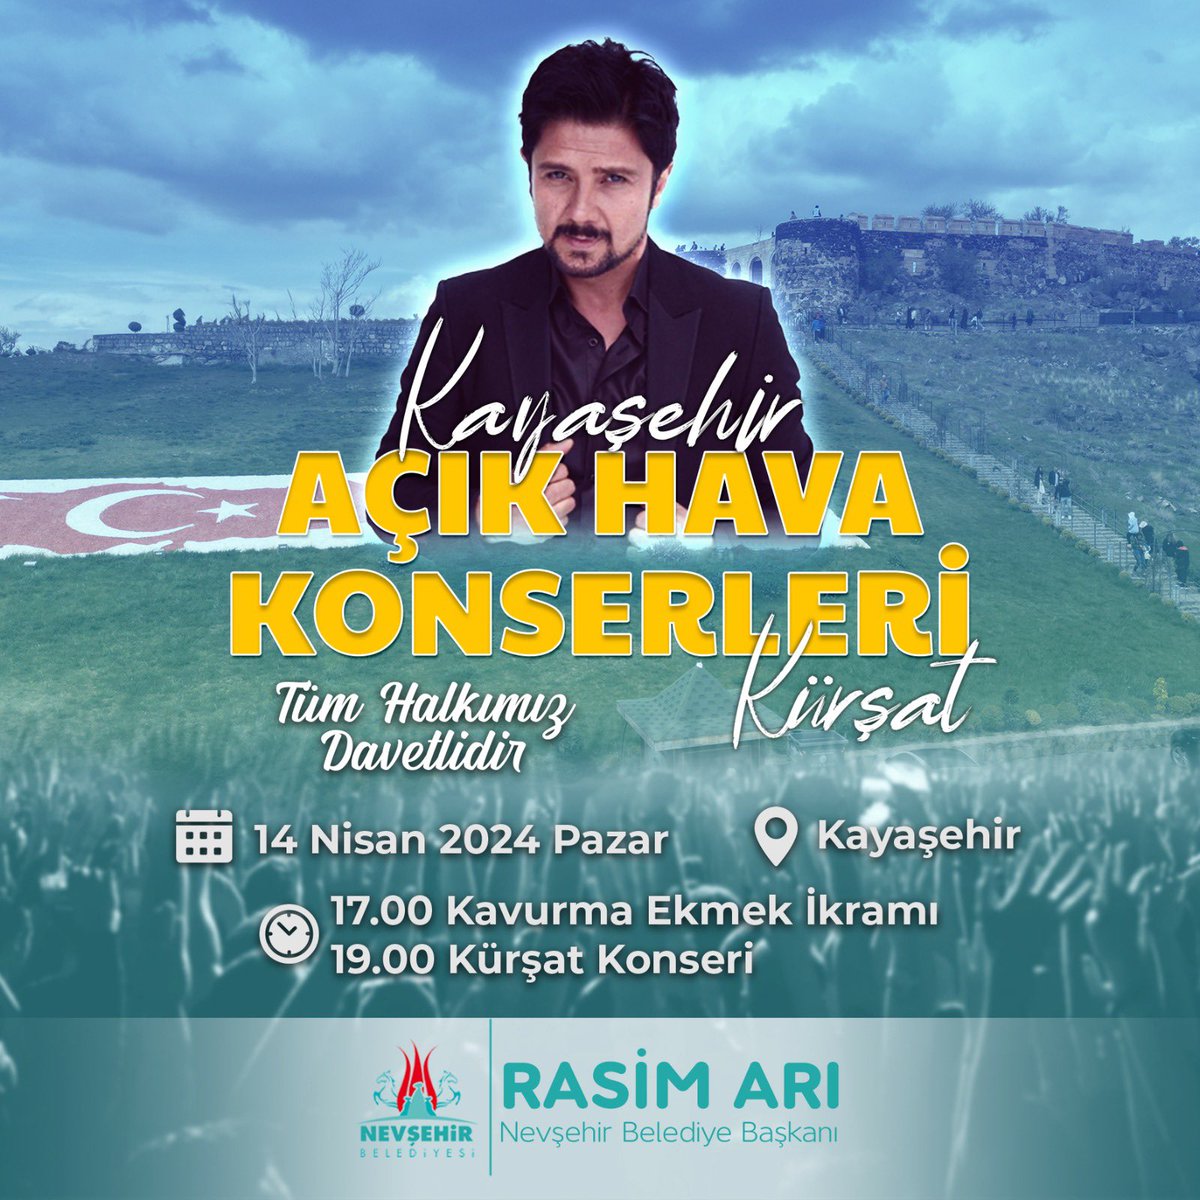 Kaldığımız yerden devam ediyoruz.
Kayaşehir Açık Hava Konserleri’nde ilk sahne alacak sanatçımız Nevşehir’in evladı Kürşat. 
14 Nisan Pazar günü Kayaşehir’e tüm hemşehrilerimiz davetlisiniz.